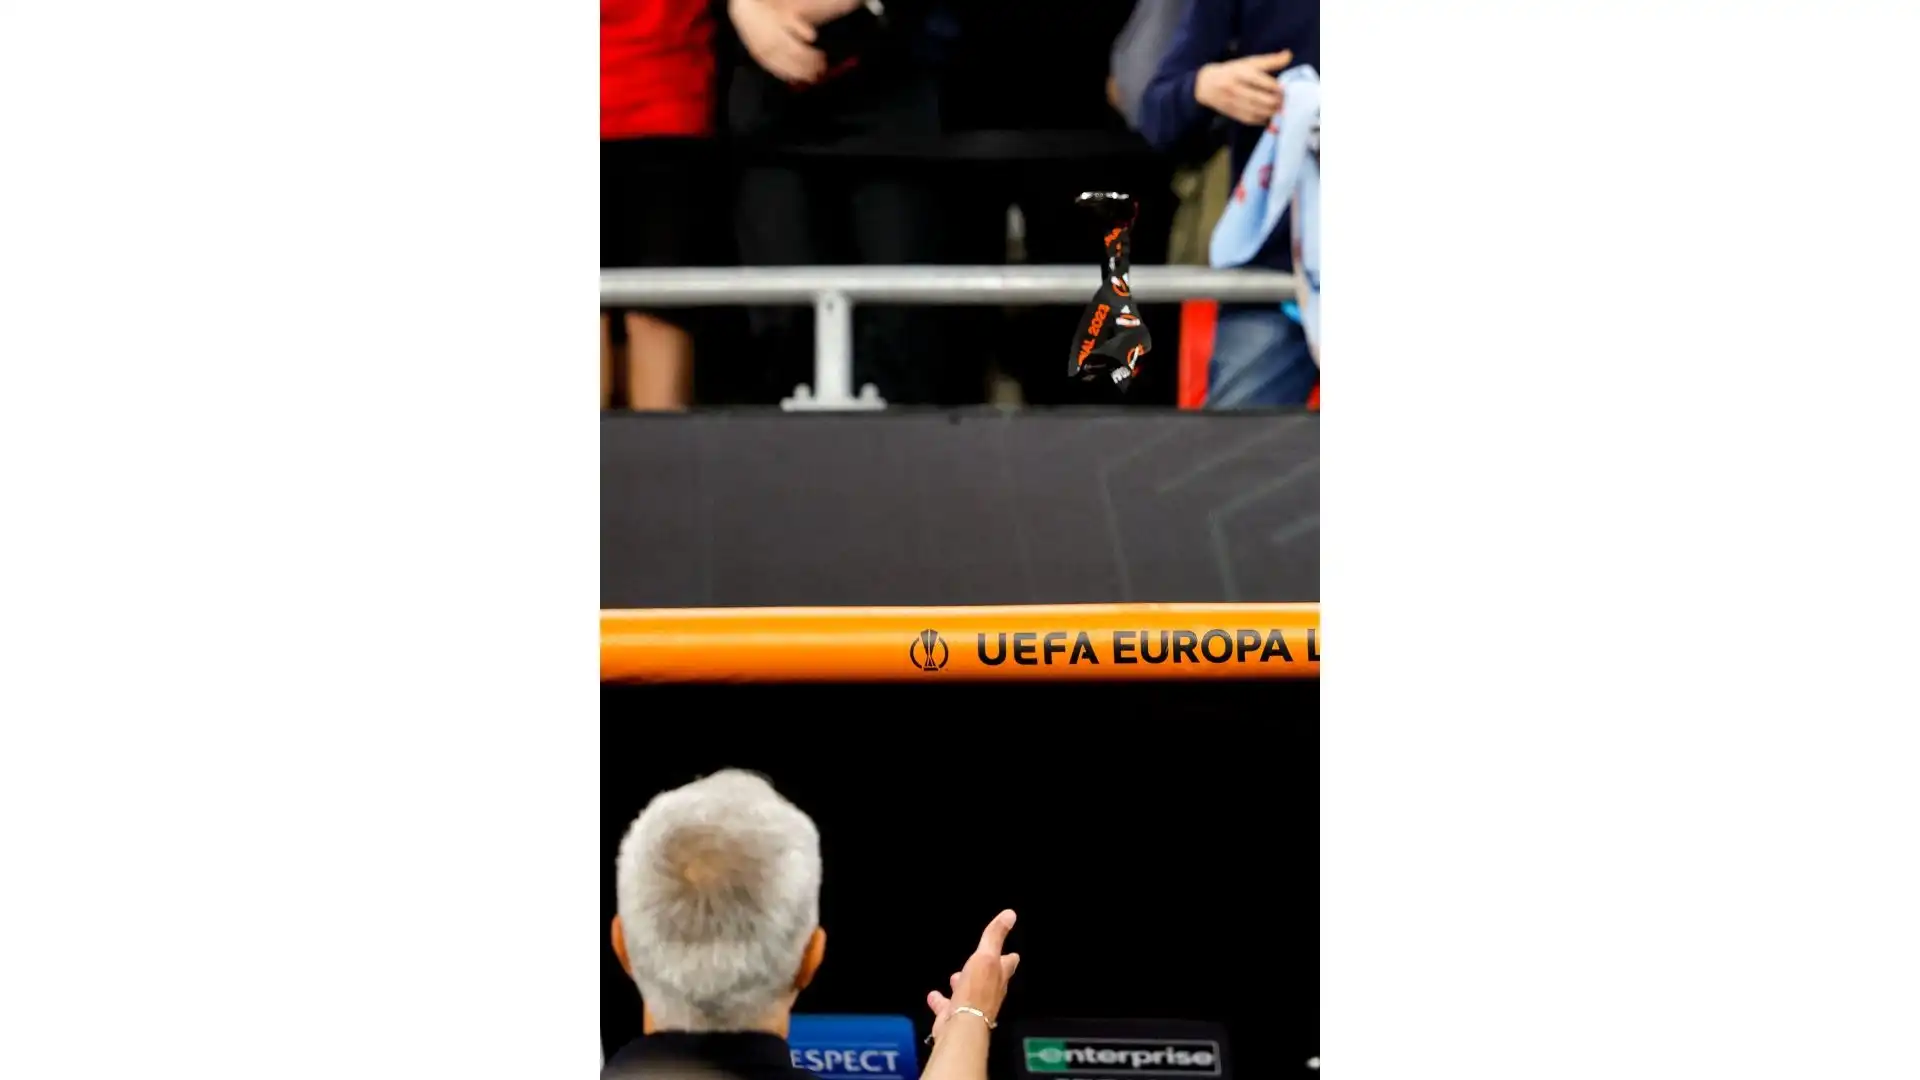 José Mourinho non ha gradito l'arbitraggio e l'ha dimostrato (anche) regalando la medaglia del secondo posto ad un giovane tifoso